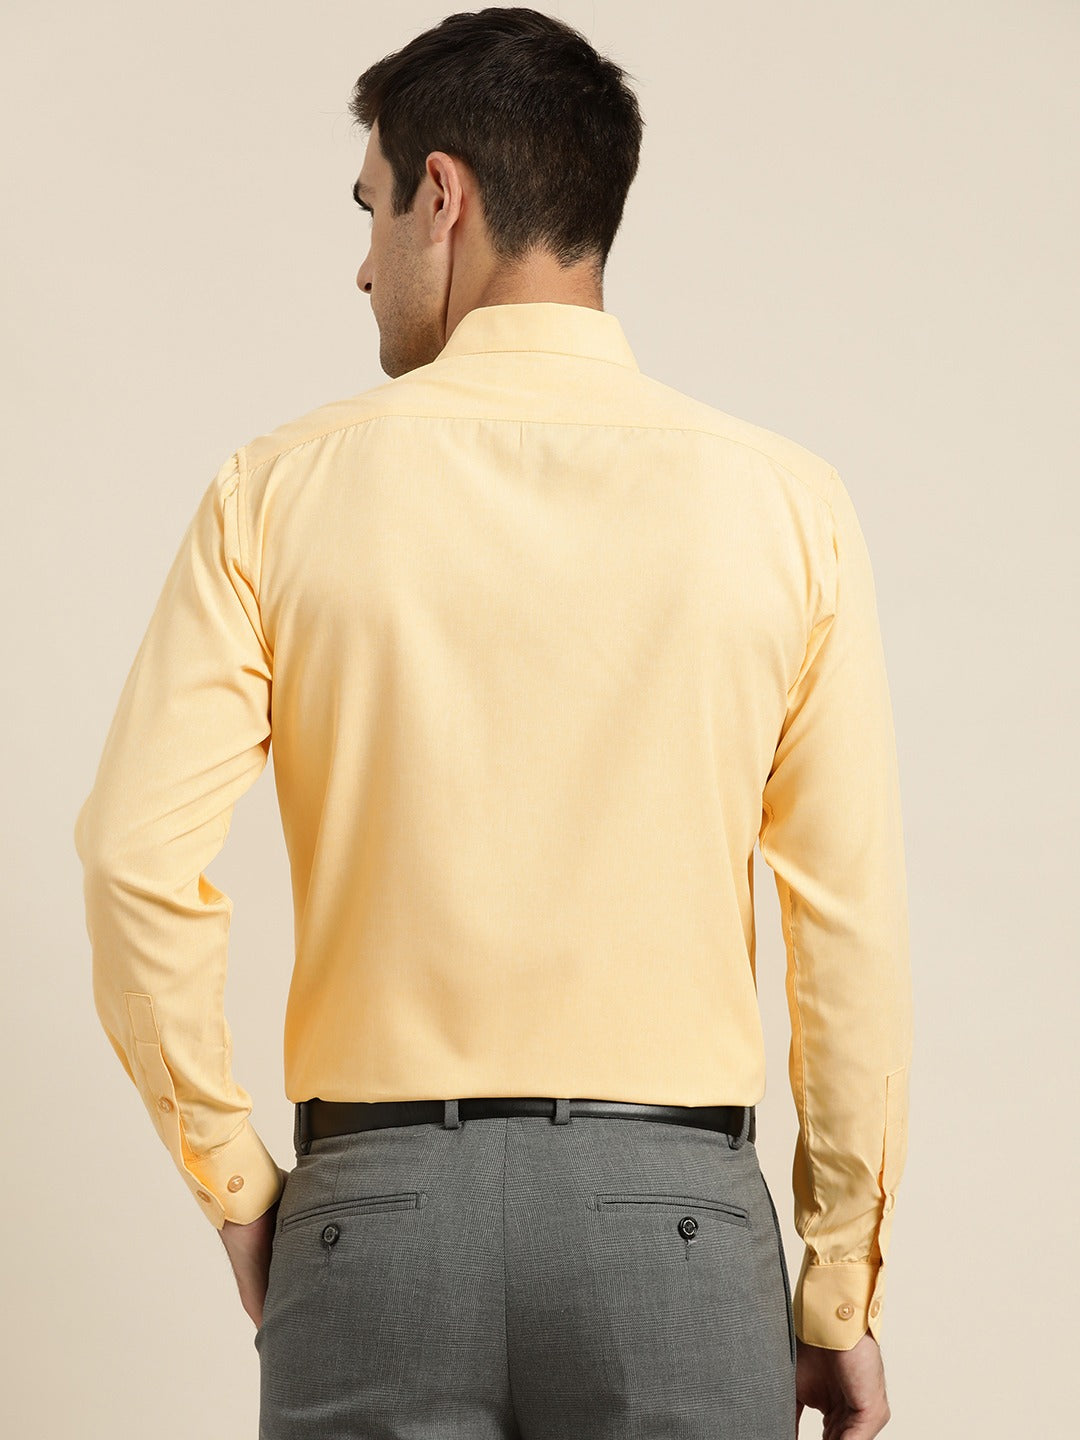 Men's Cotton Yellow Casual Shirt